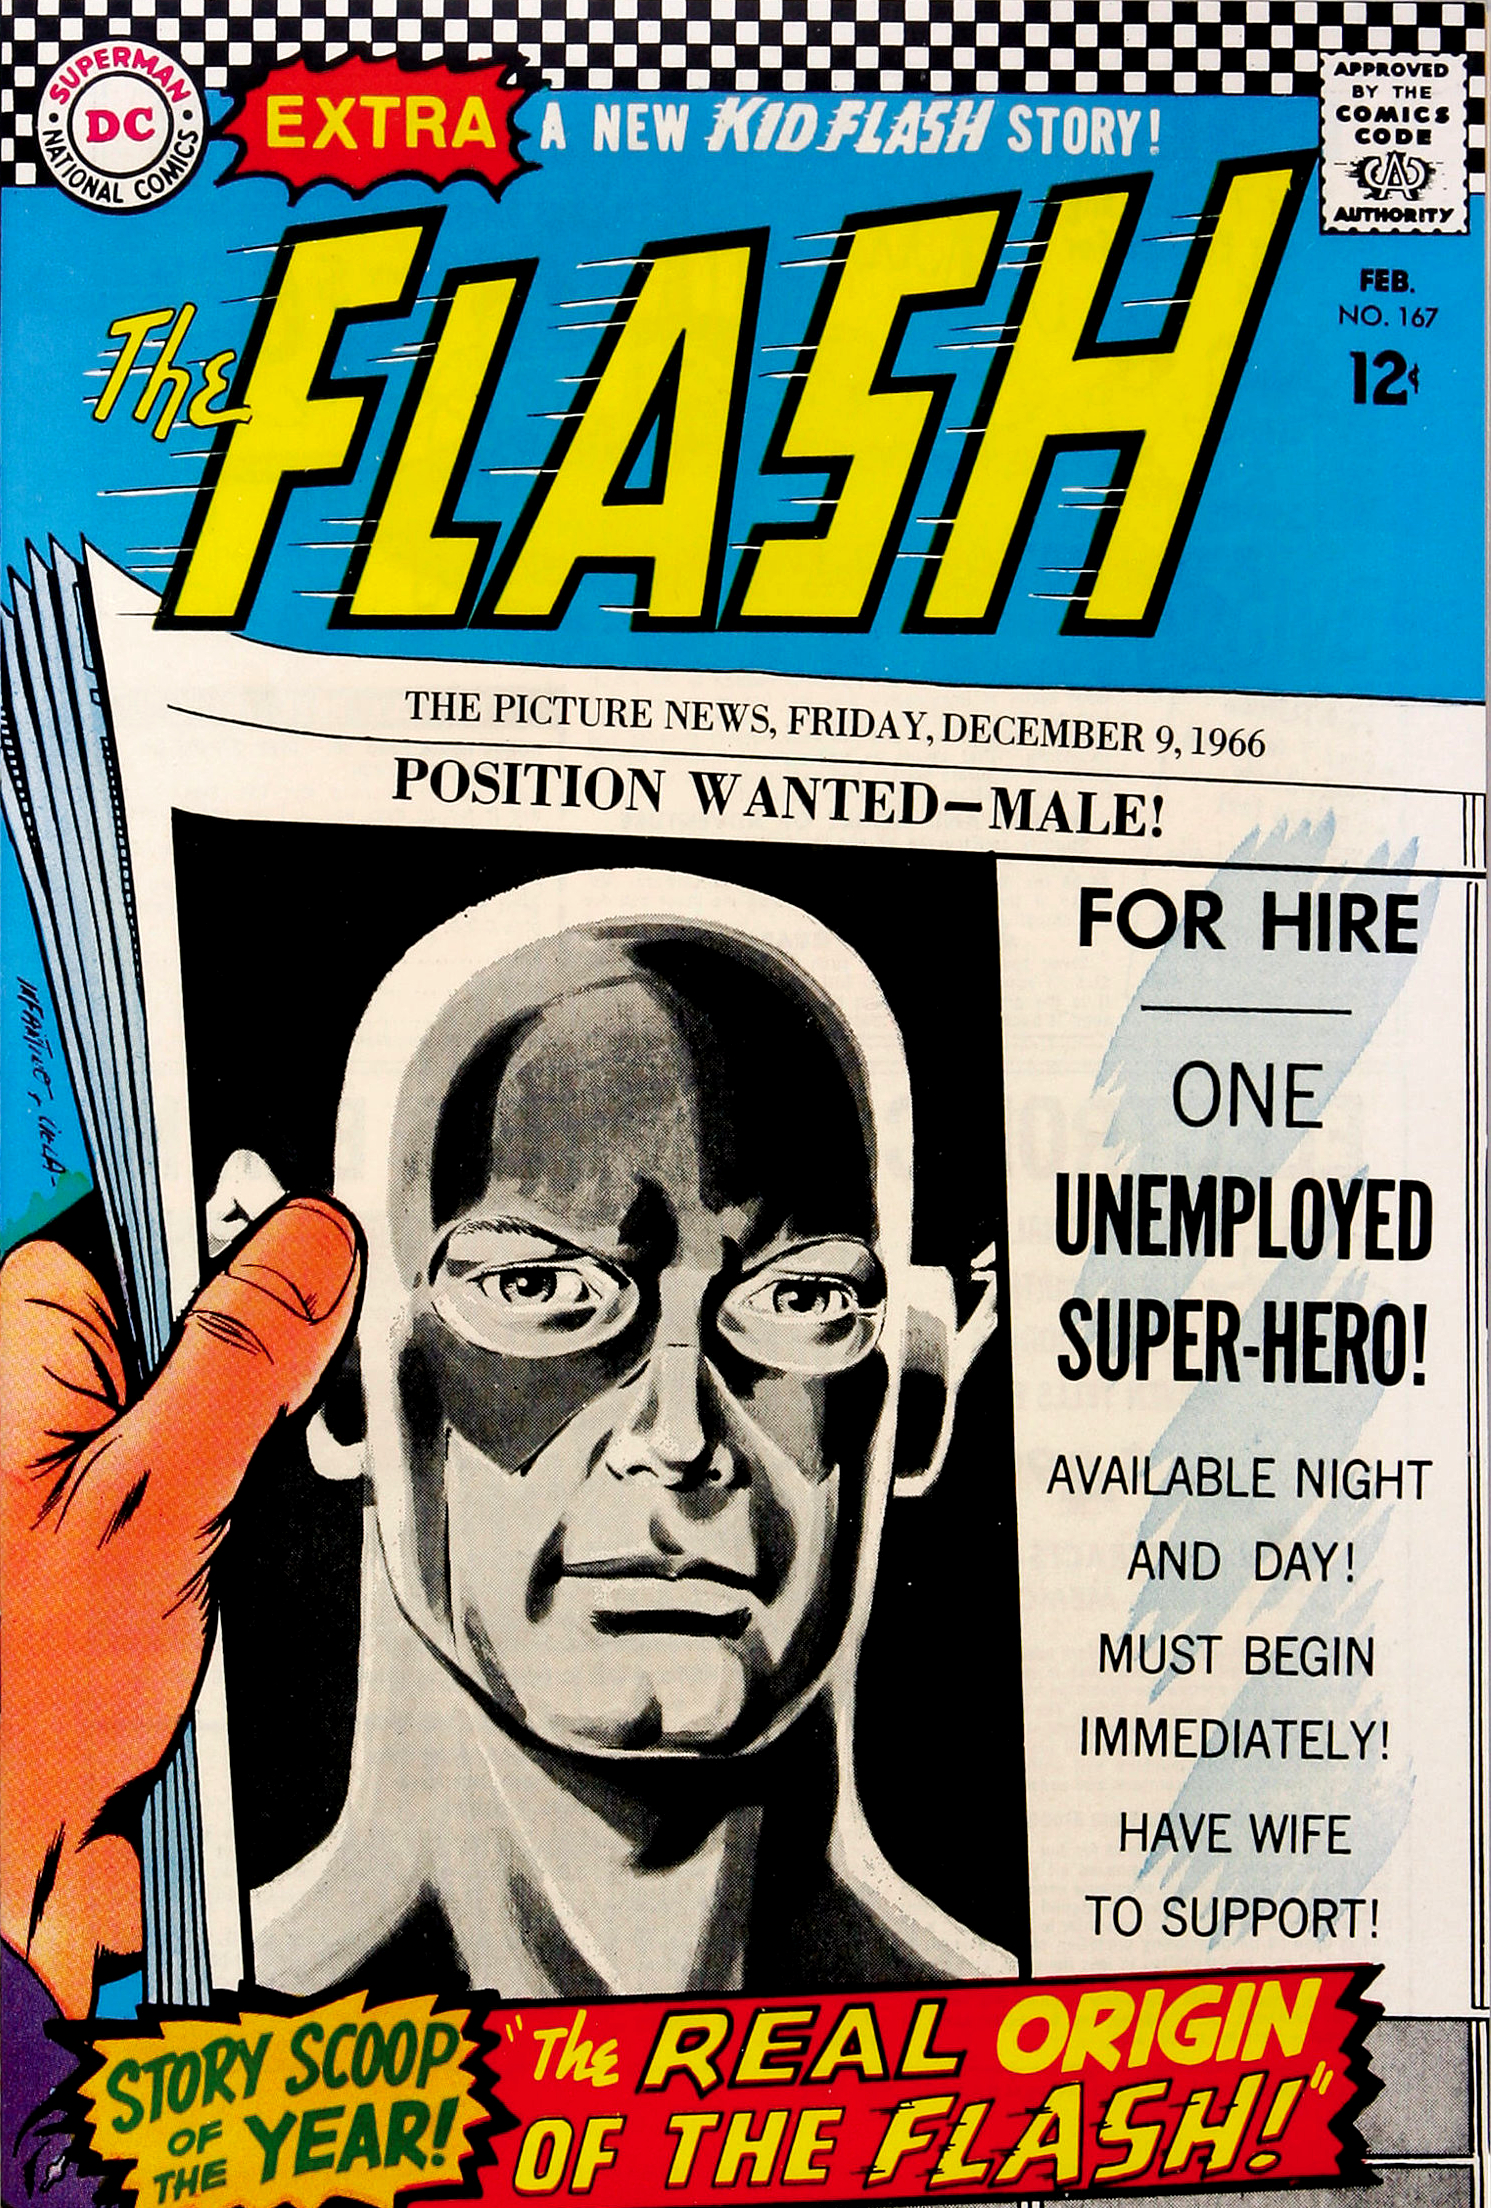 the flash omnibus vol 3